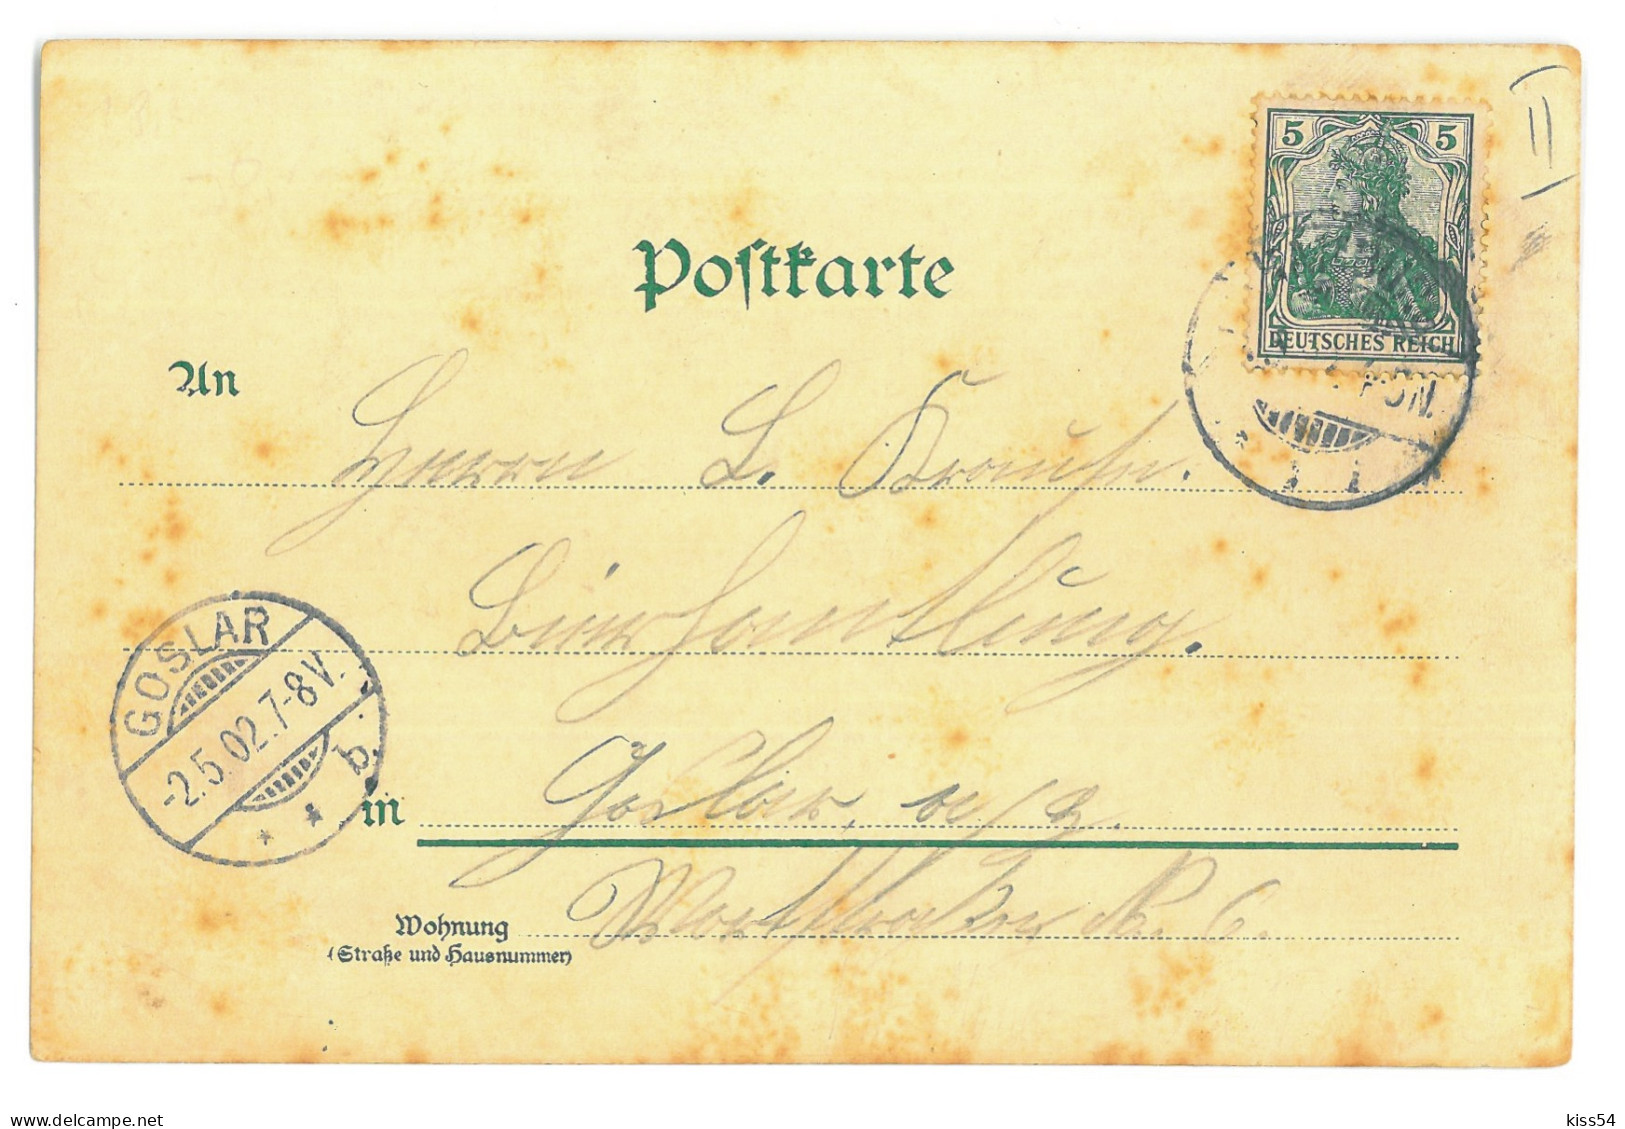 GER 02 - 16925 HAMBURG, Litho, Germany - Old Postcard - Used - 1902 - Harburg